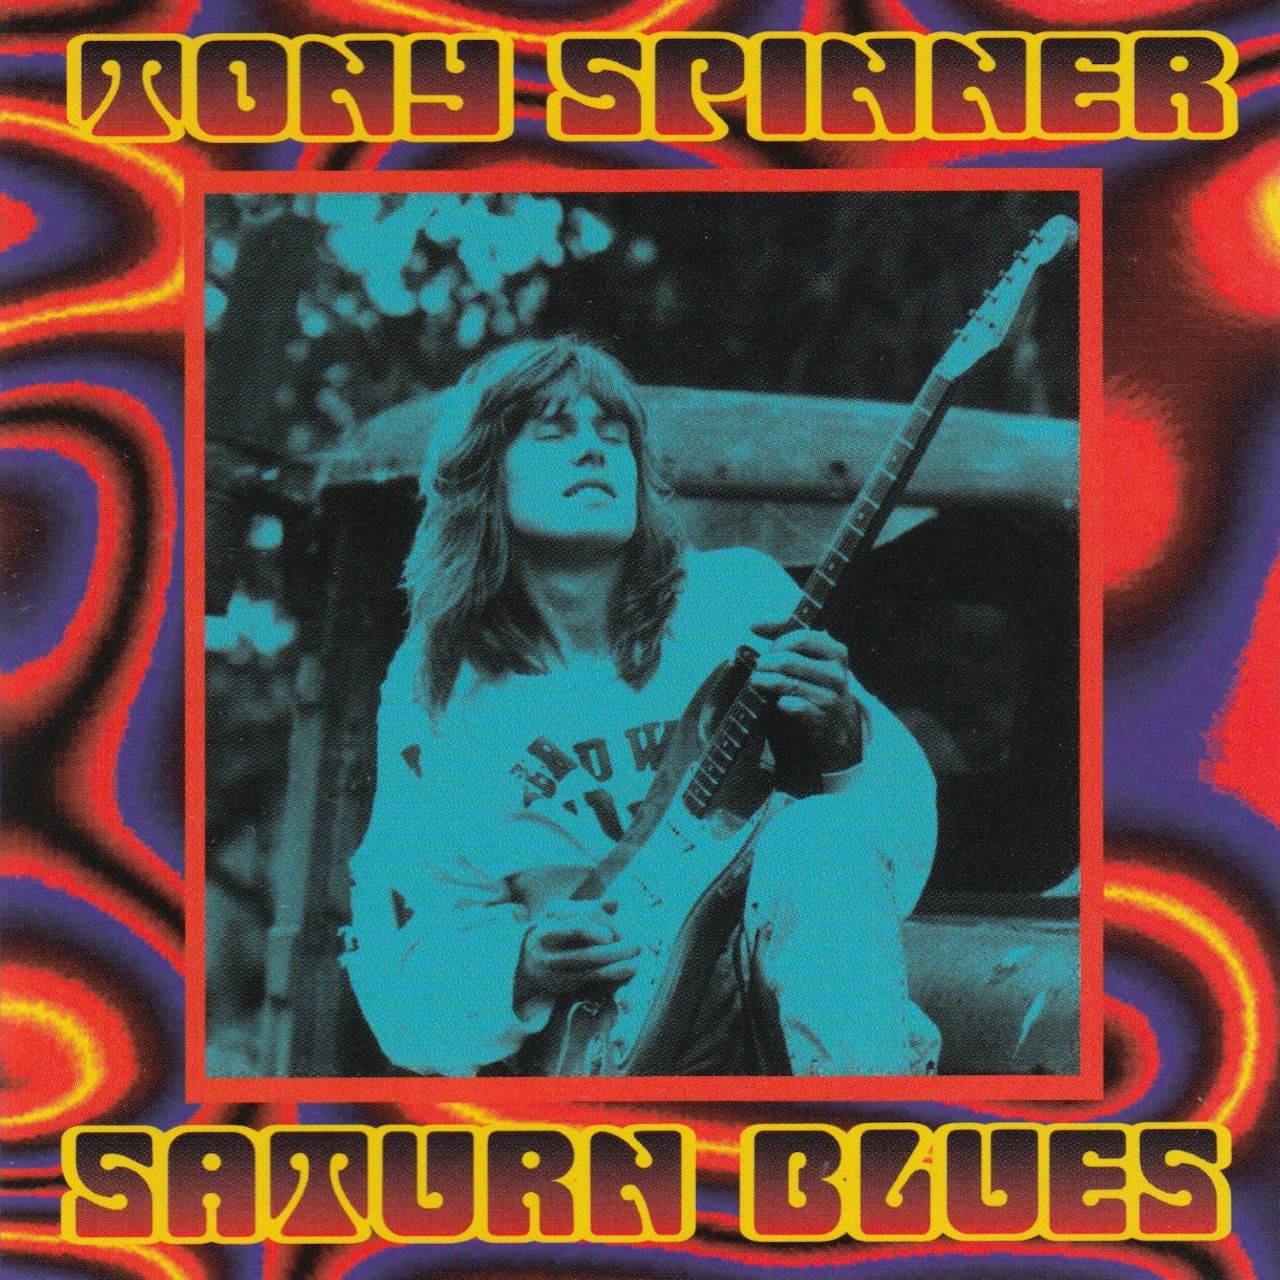 Tony Spinner – Saturn Bluesc cover album